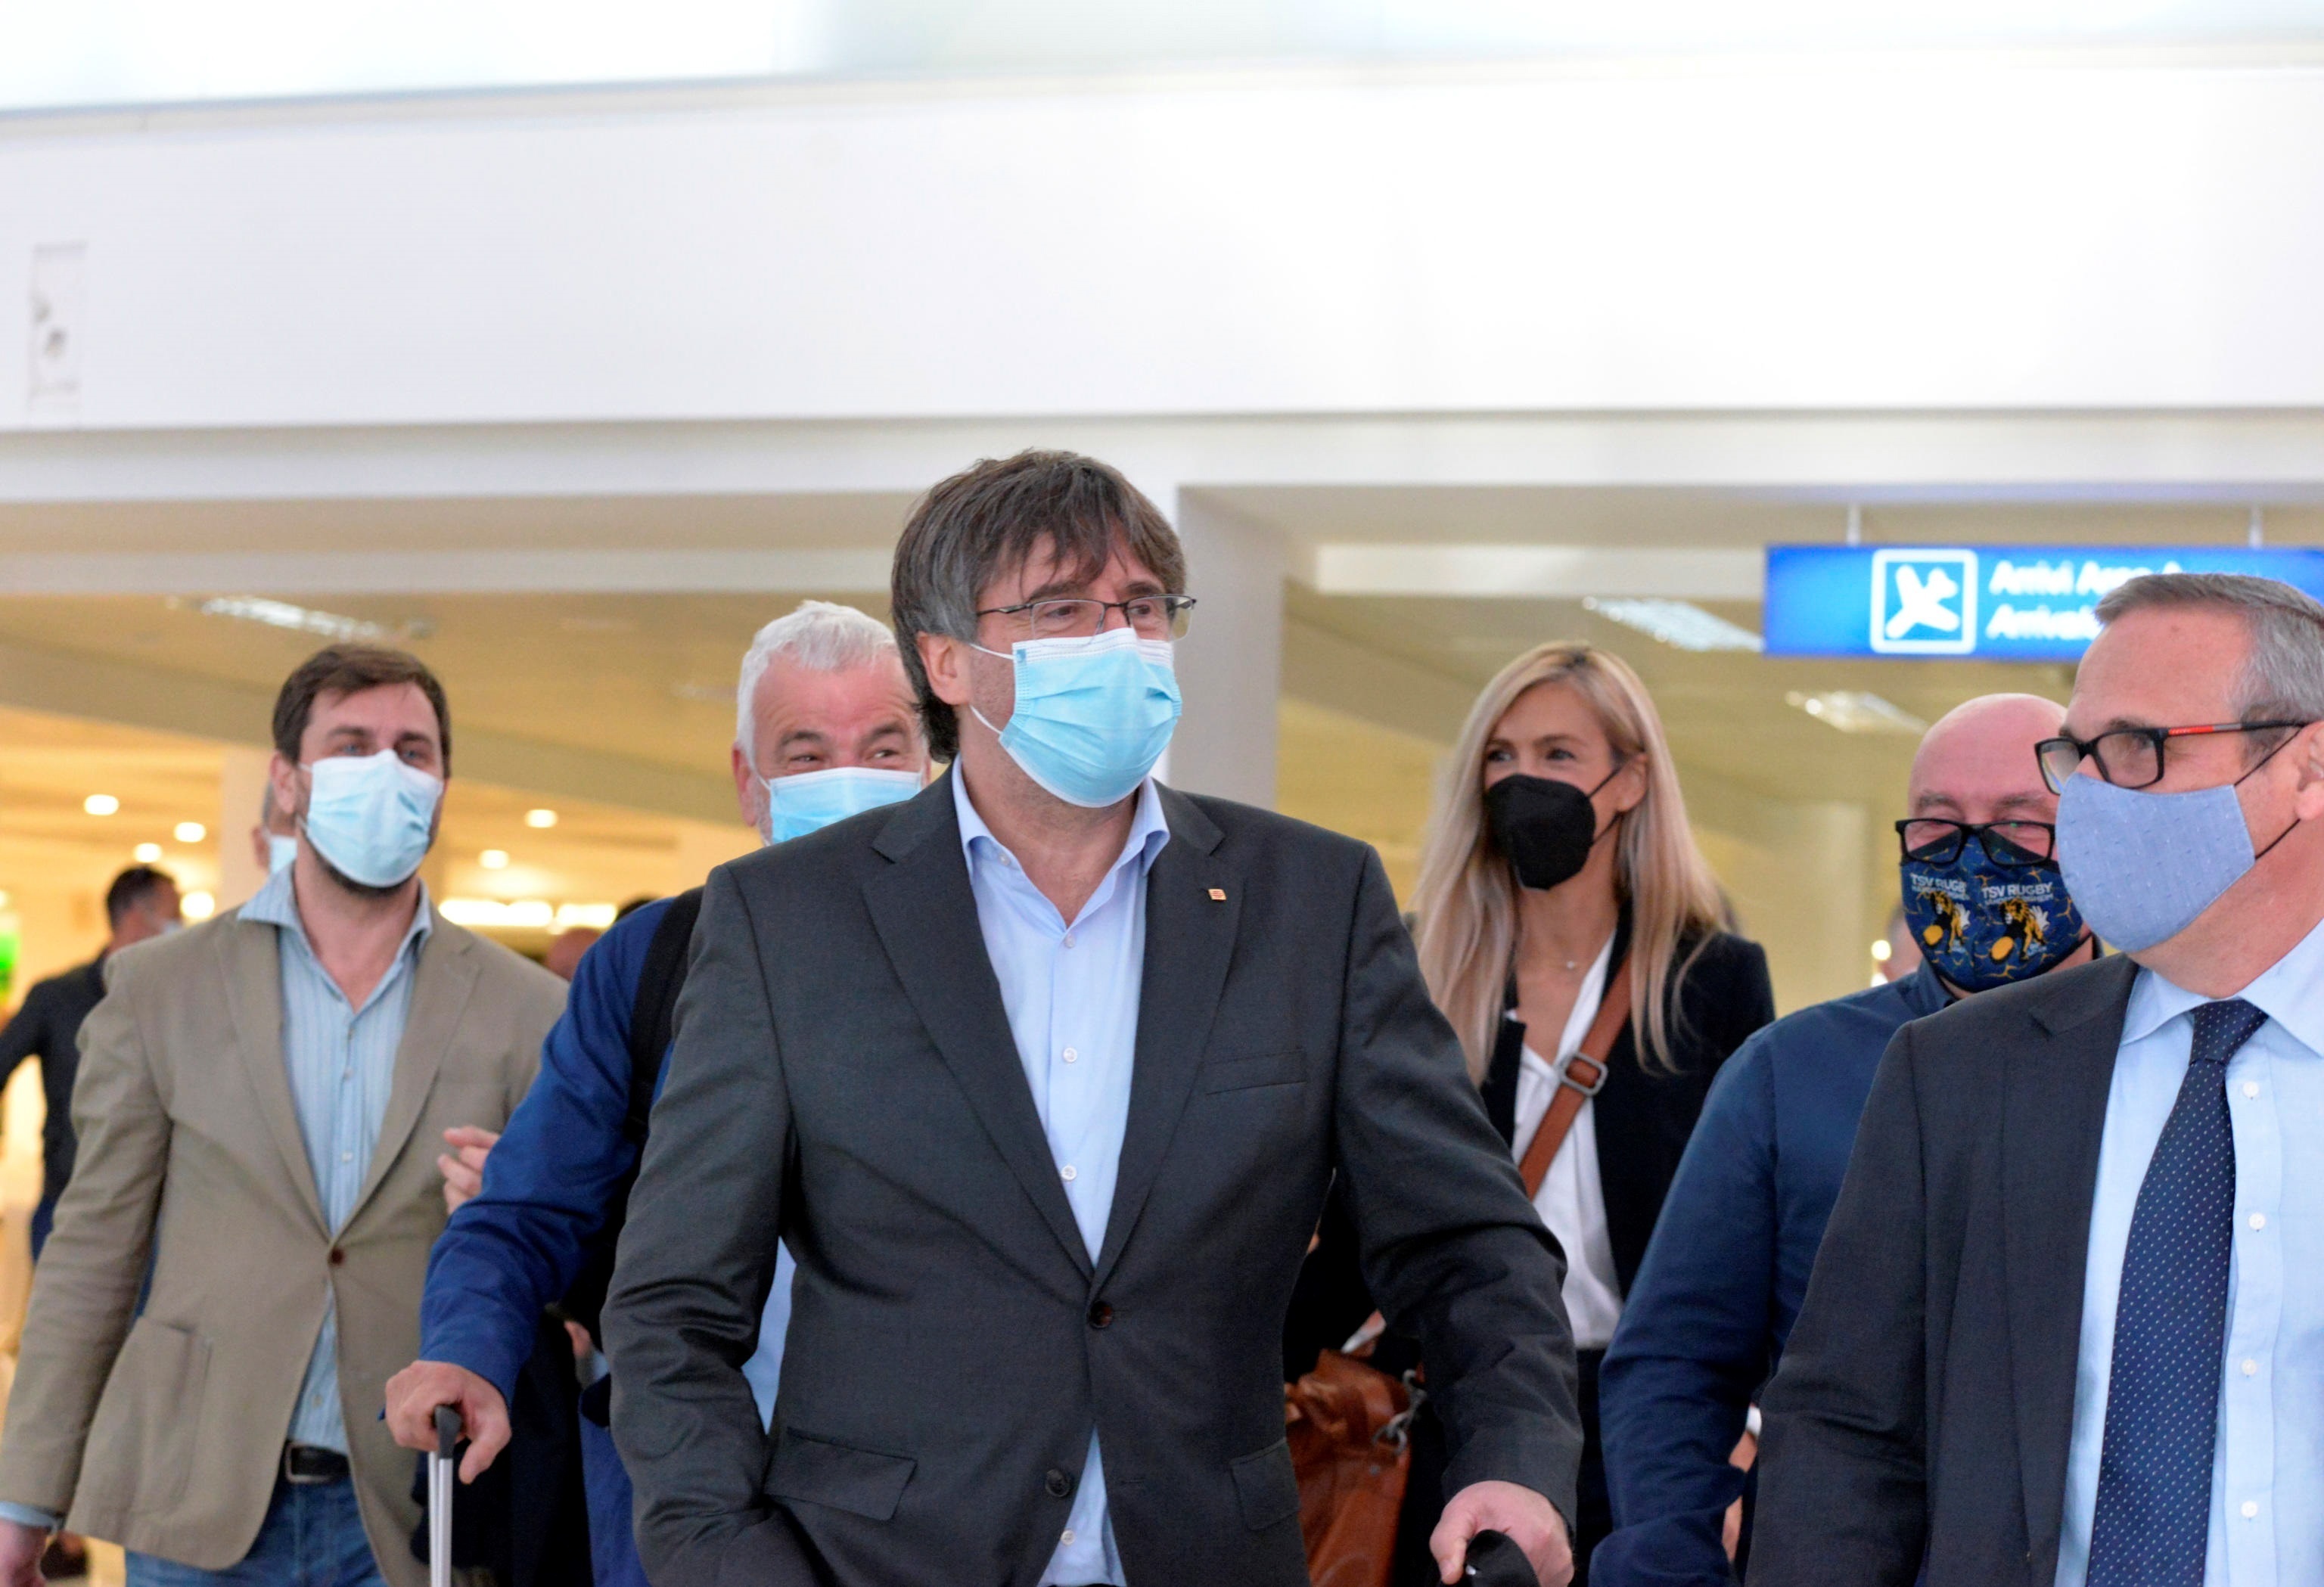 El ex lder cataln y miembro del Parlamento Europeo, Carles Puigdemont, flanqueado por su abogado Gonzalo Boje, llega al aeropuerto de Alghero, en la isla de Cerdea (Italia)